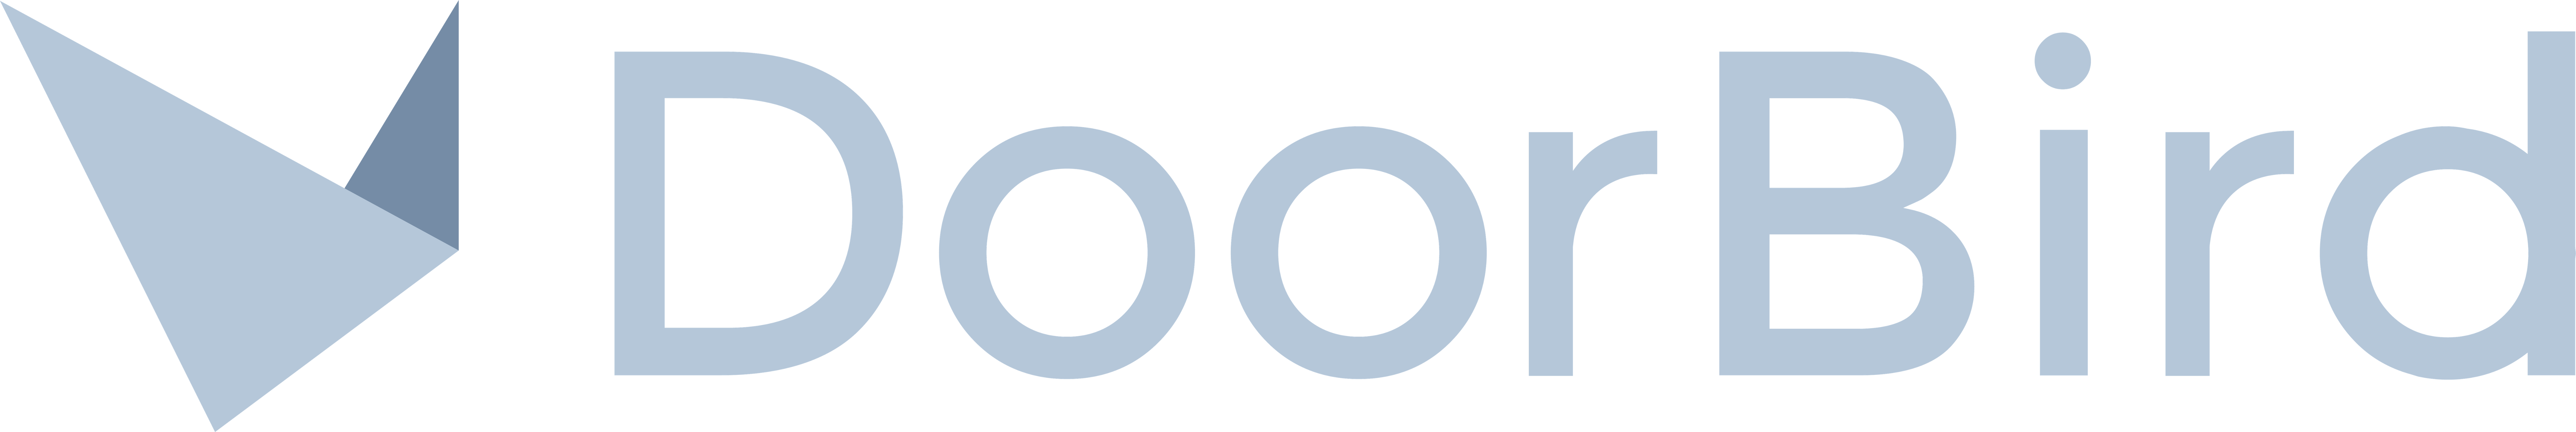 doorbird logo